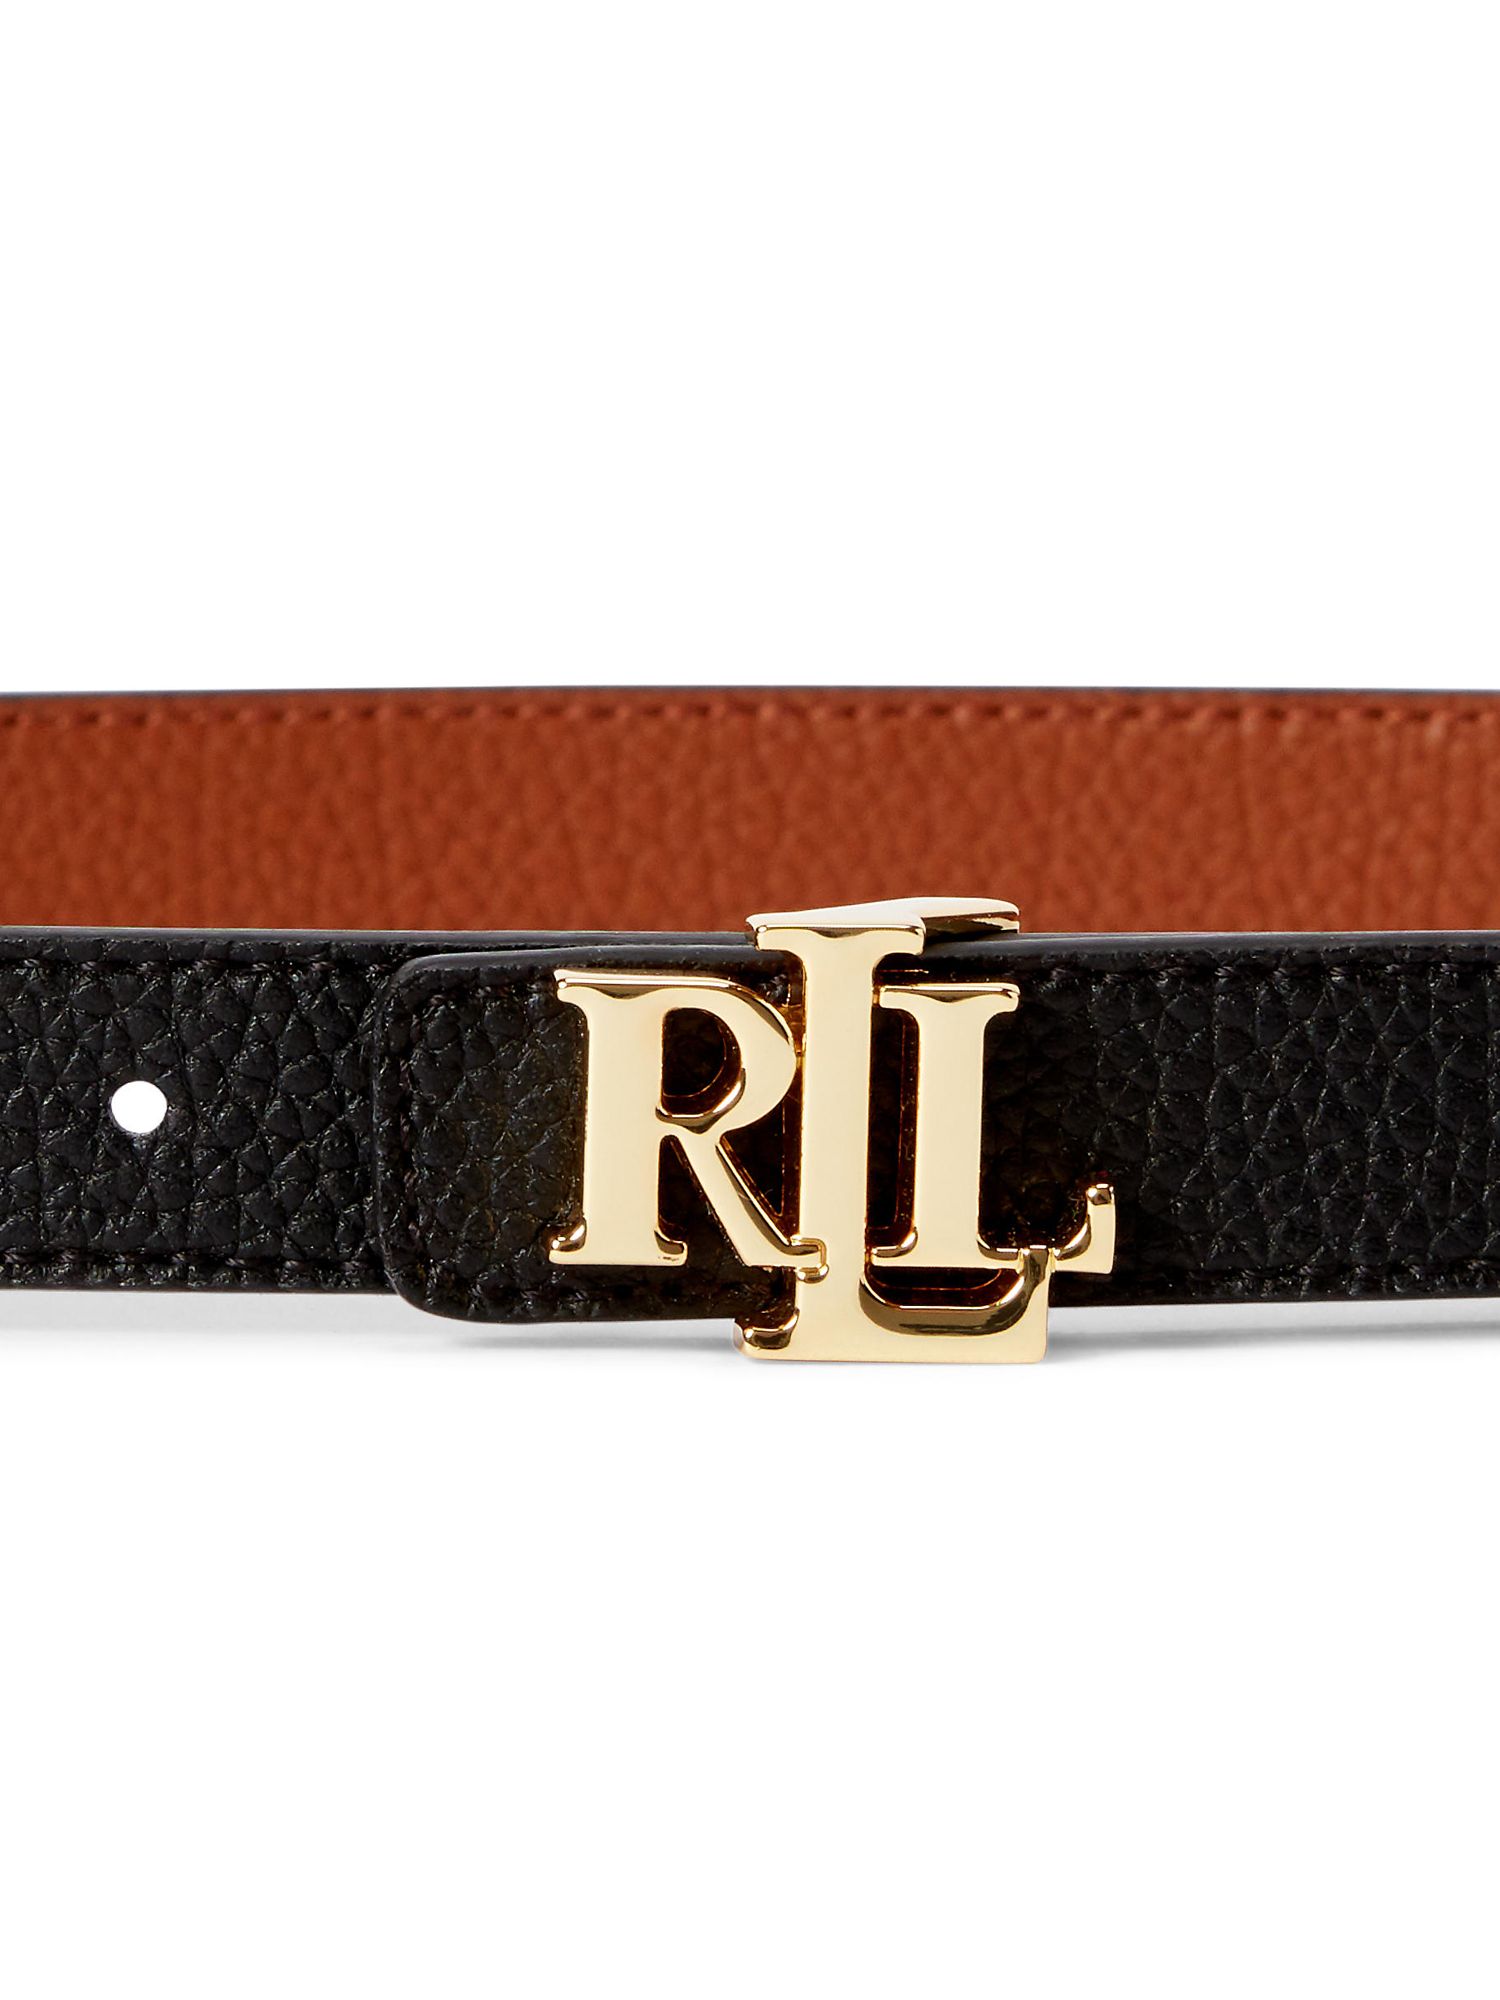 Lauren Ralph Lauren 20 Reversible Leather Belt, Black/Lauren Tan, S